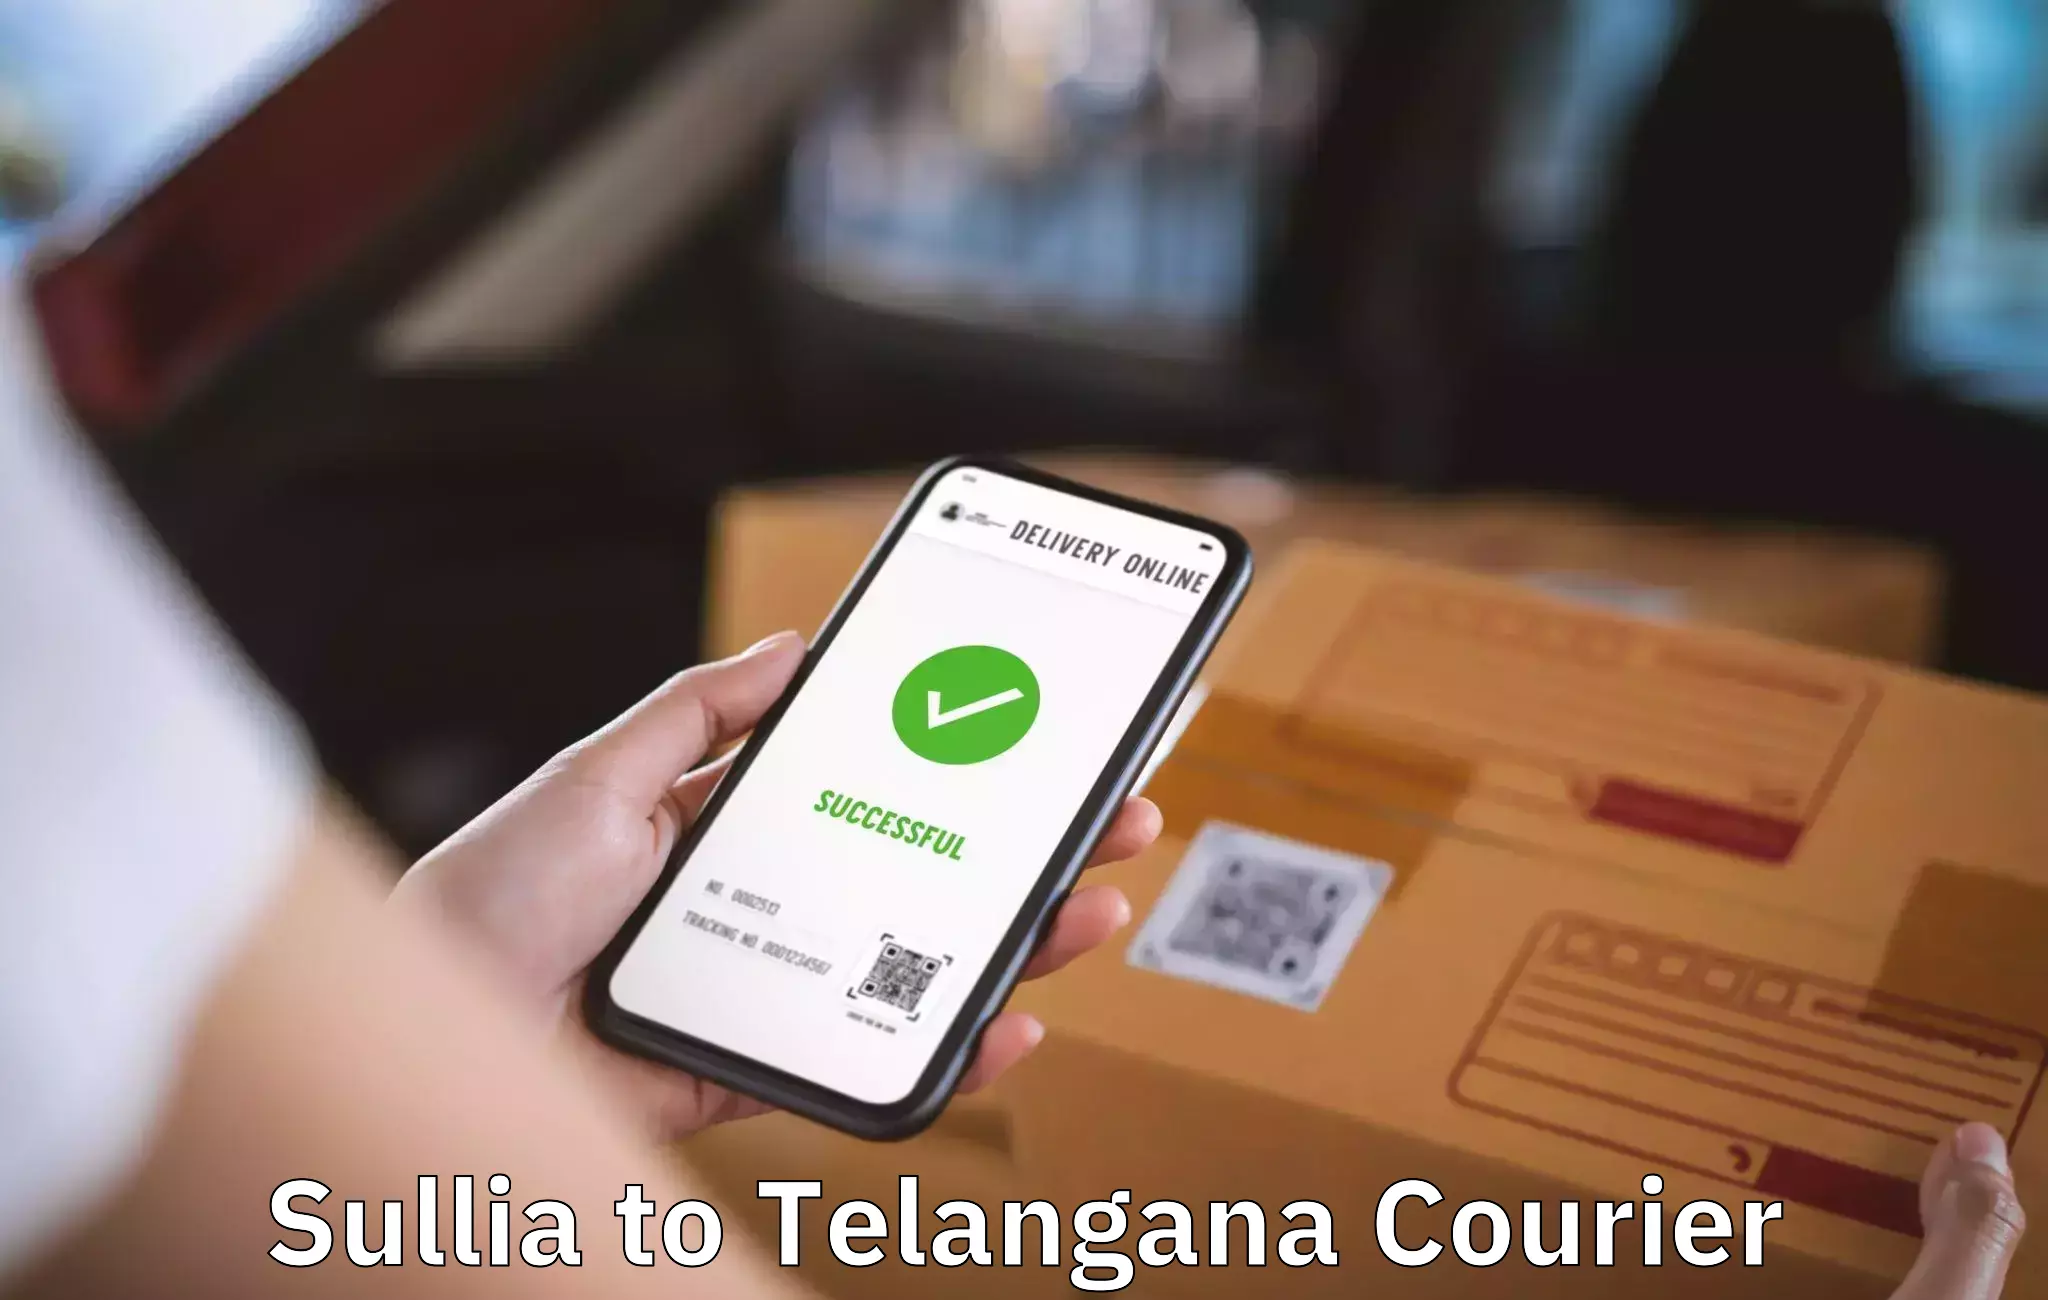 Professional furniture movers Sullia to Telangana